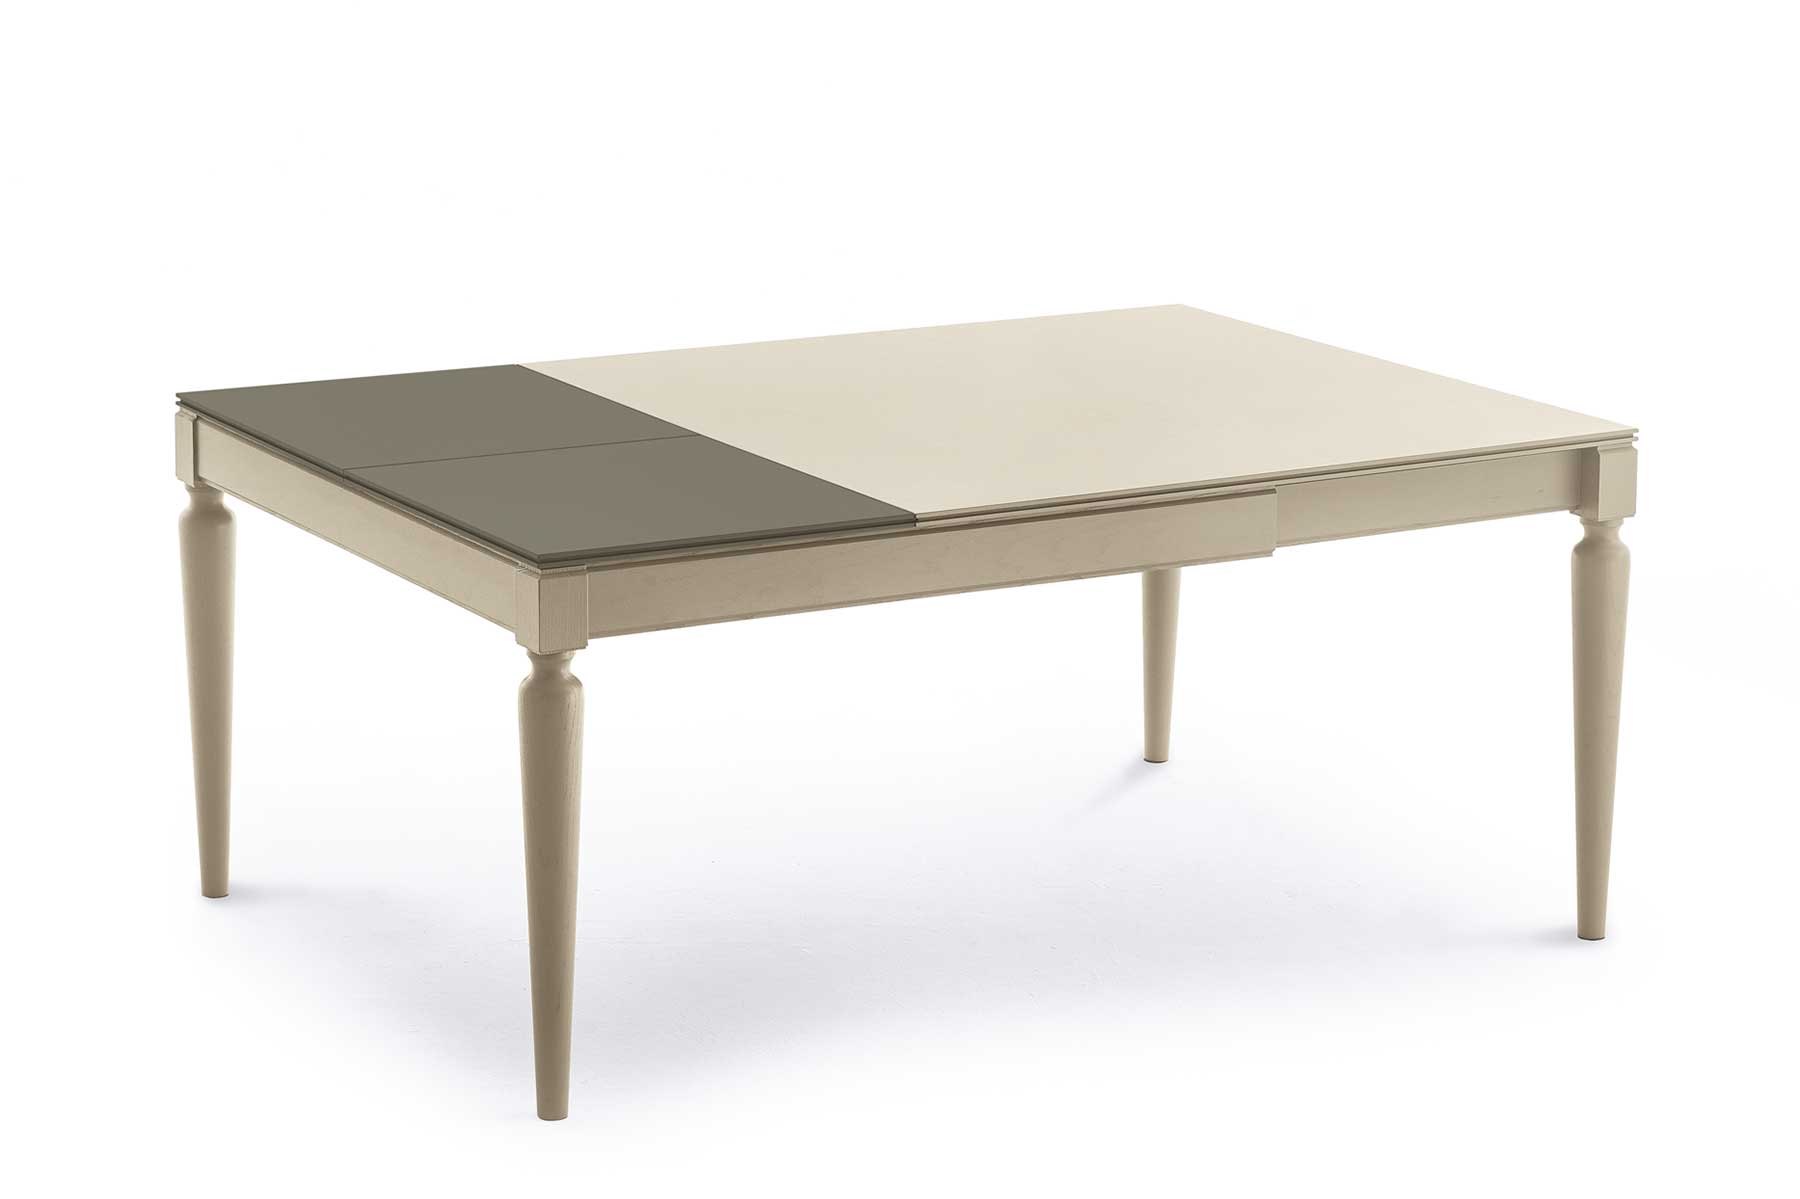 Table de repas carrée à rallonges. Transformable, 3 tables en une. Vente en ligne de tables design haut de gamme avec livraison gratuite.